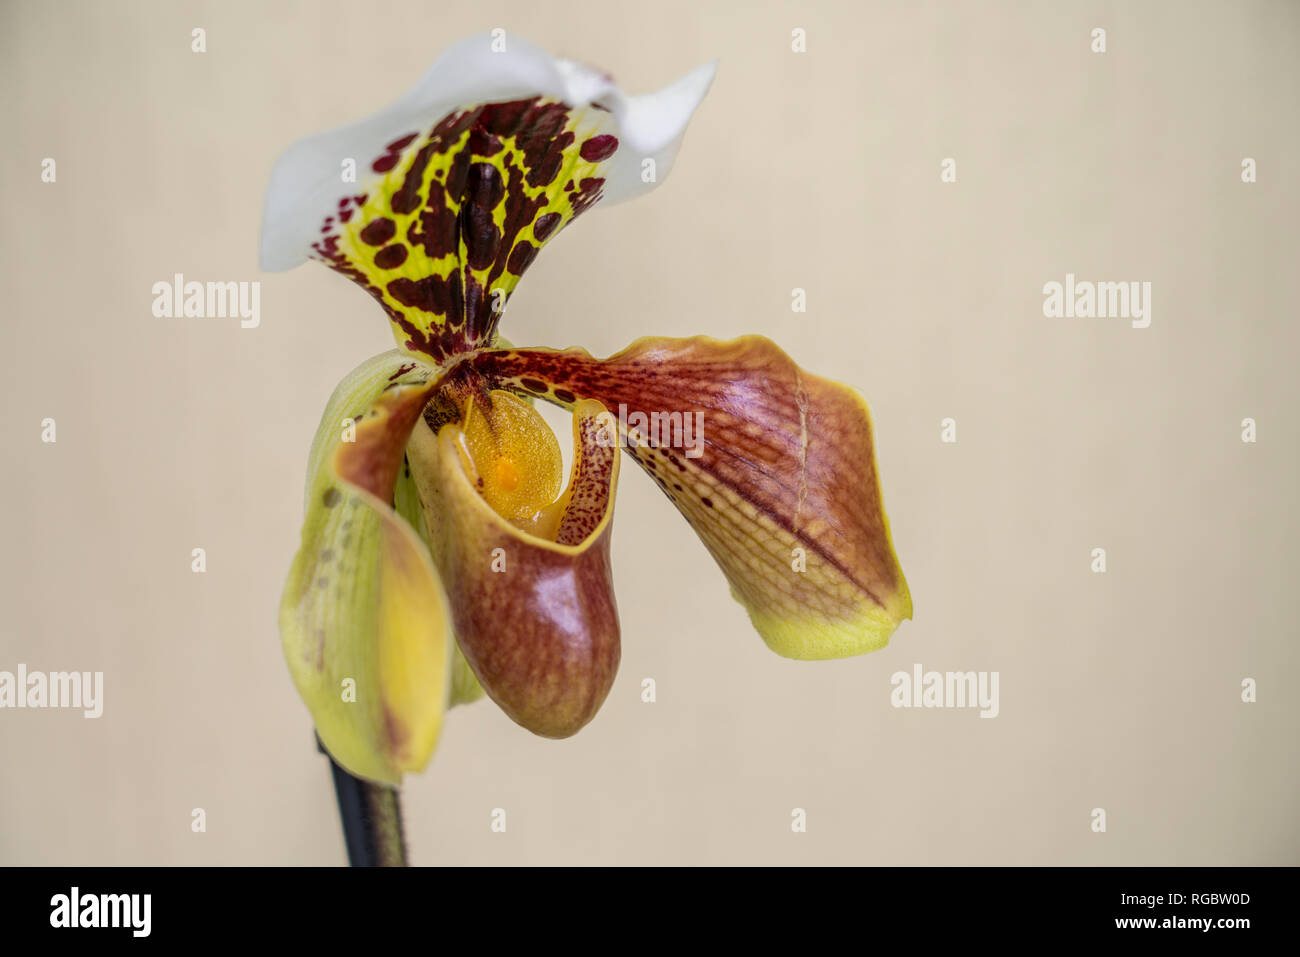 flower orhidee Paphiopedilum, Venus slipper (Paphiopedilum) close-up Stock Photo